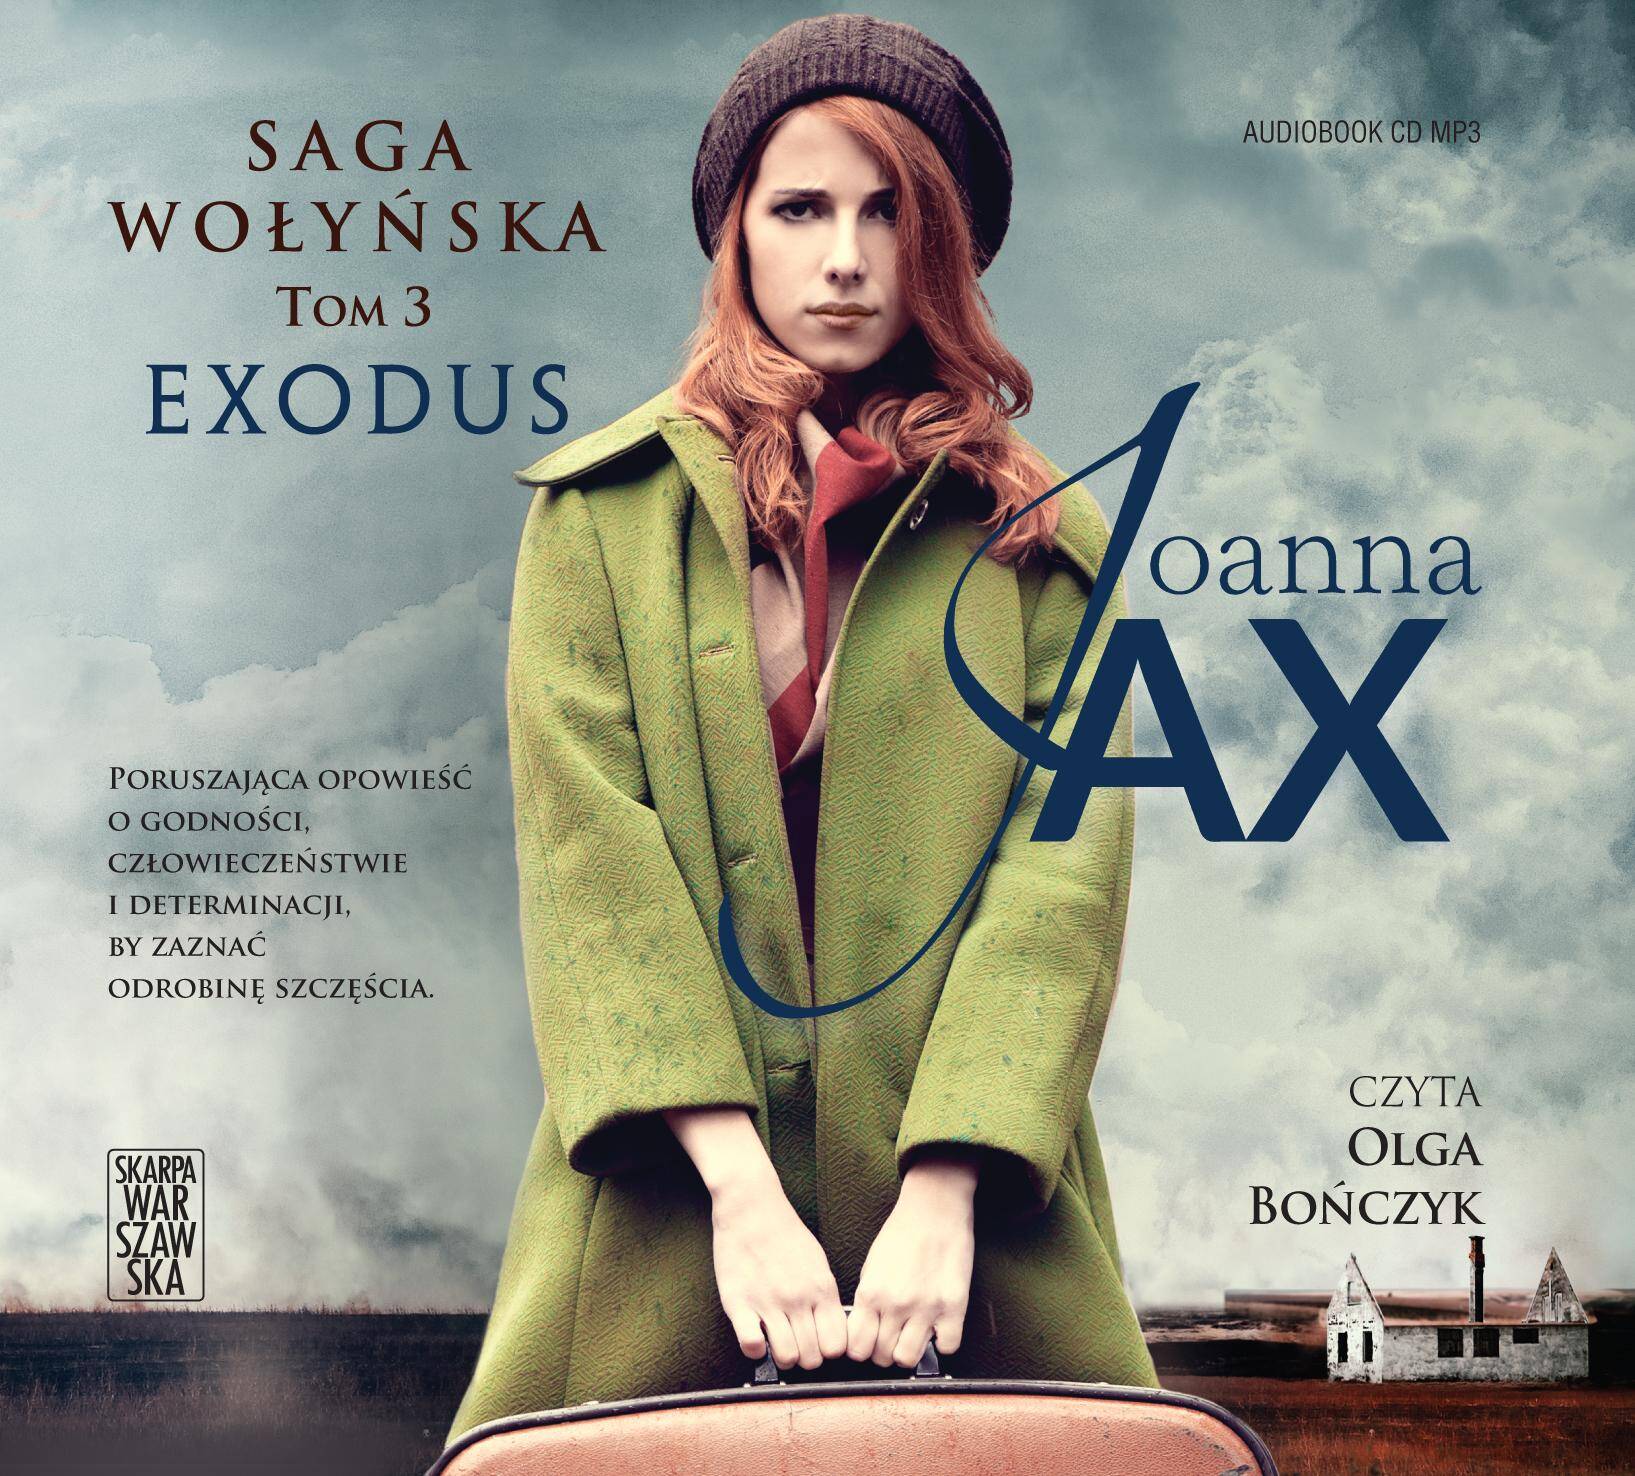 CD MP3 Saga Wołyńska. Exodus